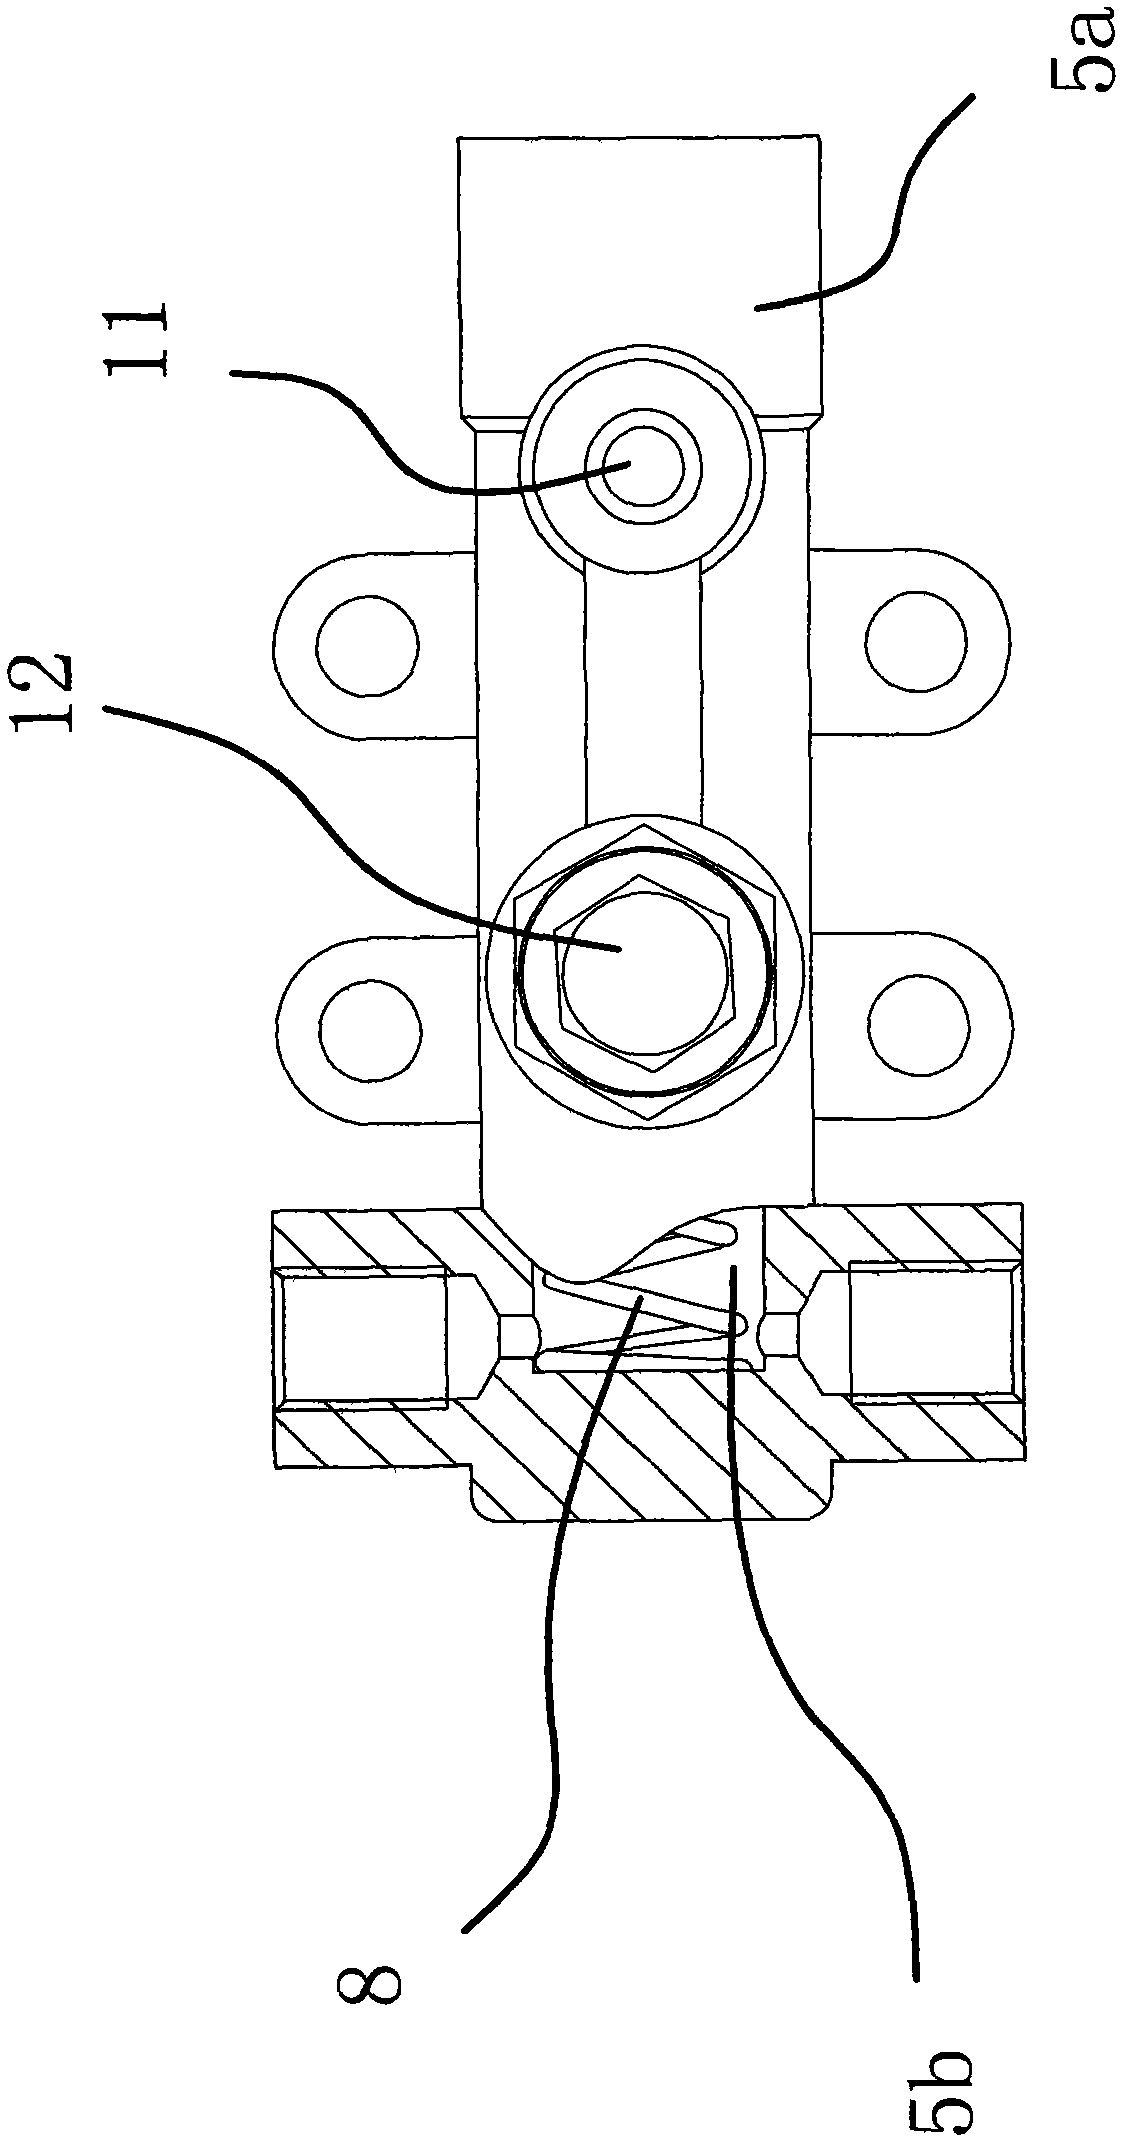 Two-dragging-three type front-rear linkage brake